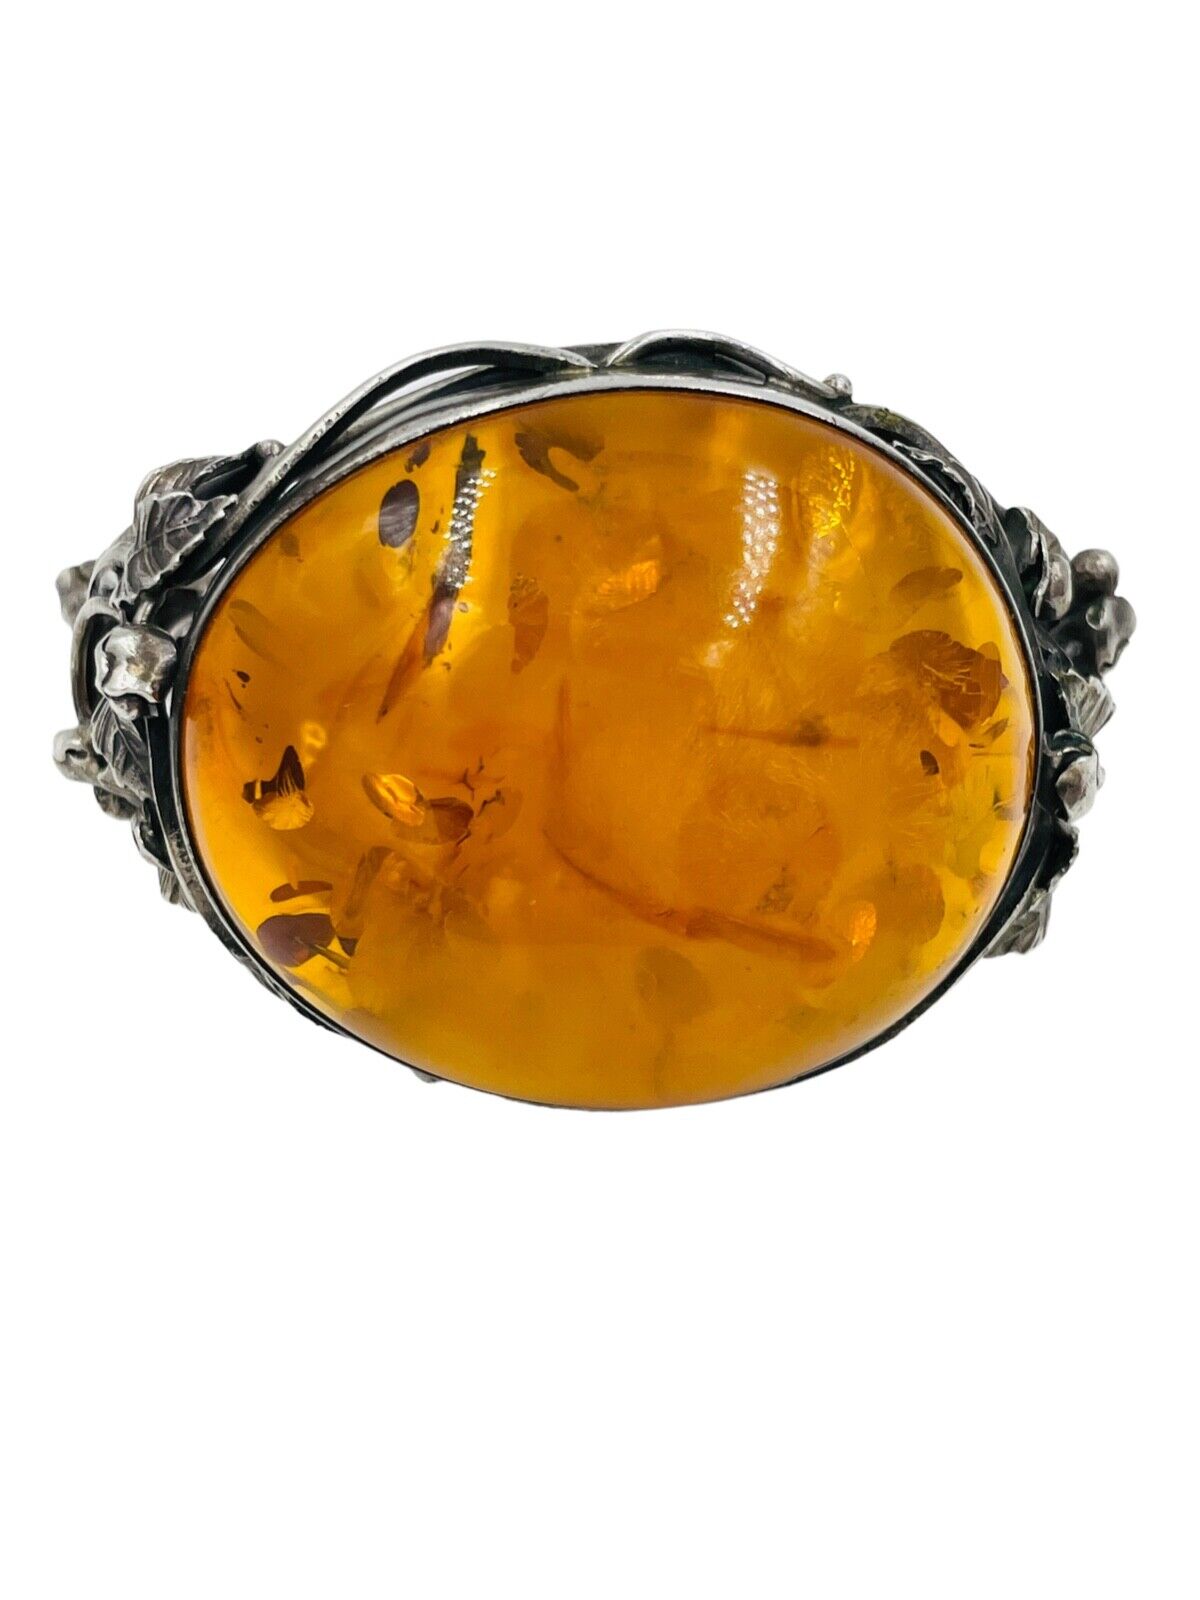 Vintage Sterling Silver Cognac Amber bracelet from Poland Huge